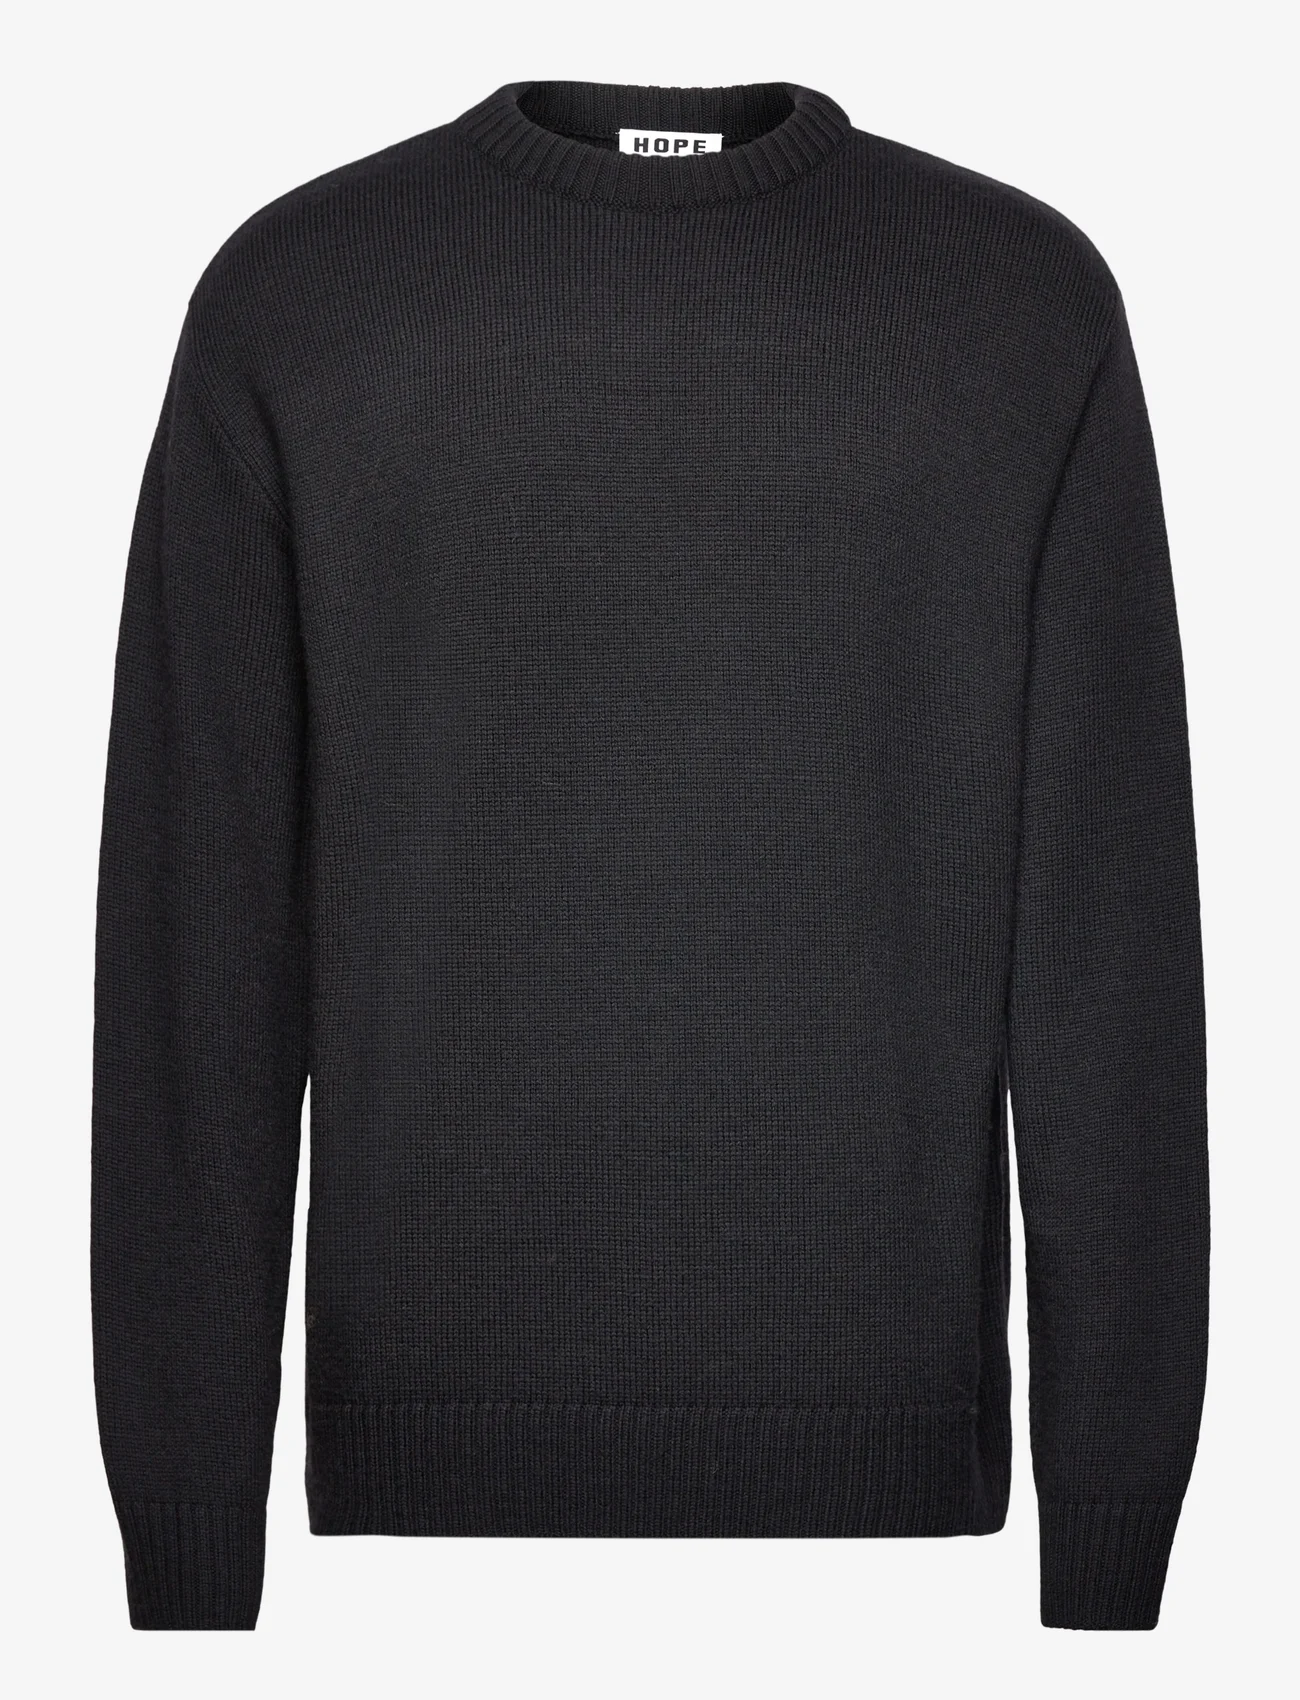 Hope - Oversized Merino Wool Sweater - knitted round necks - black - 0